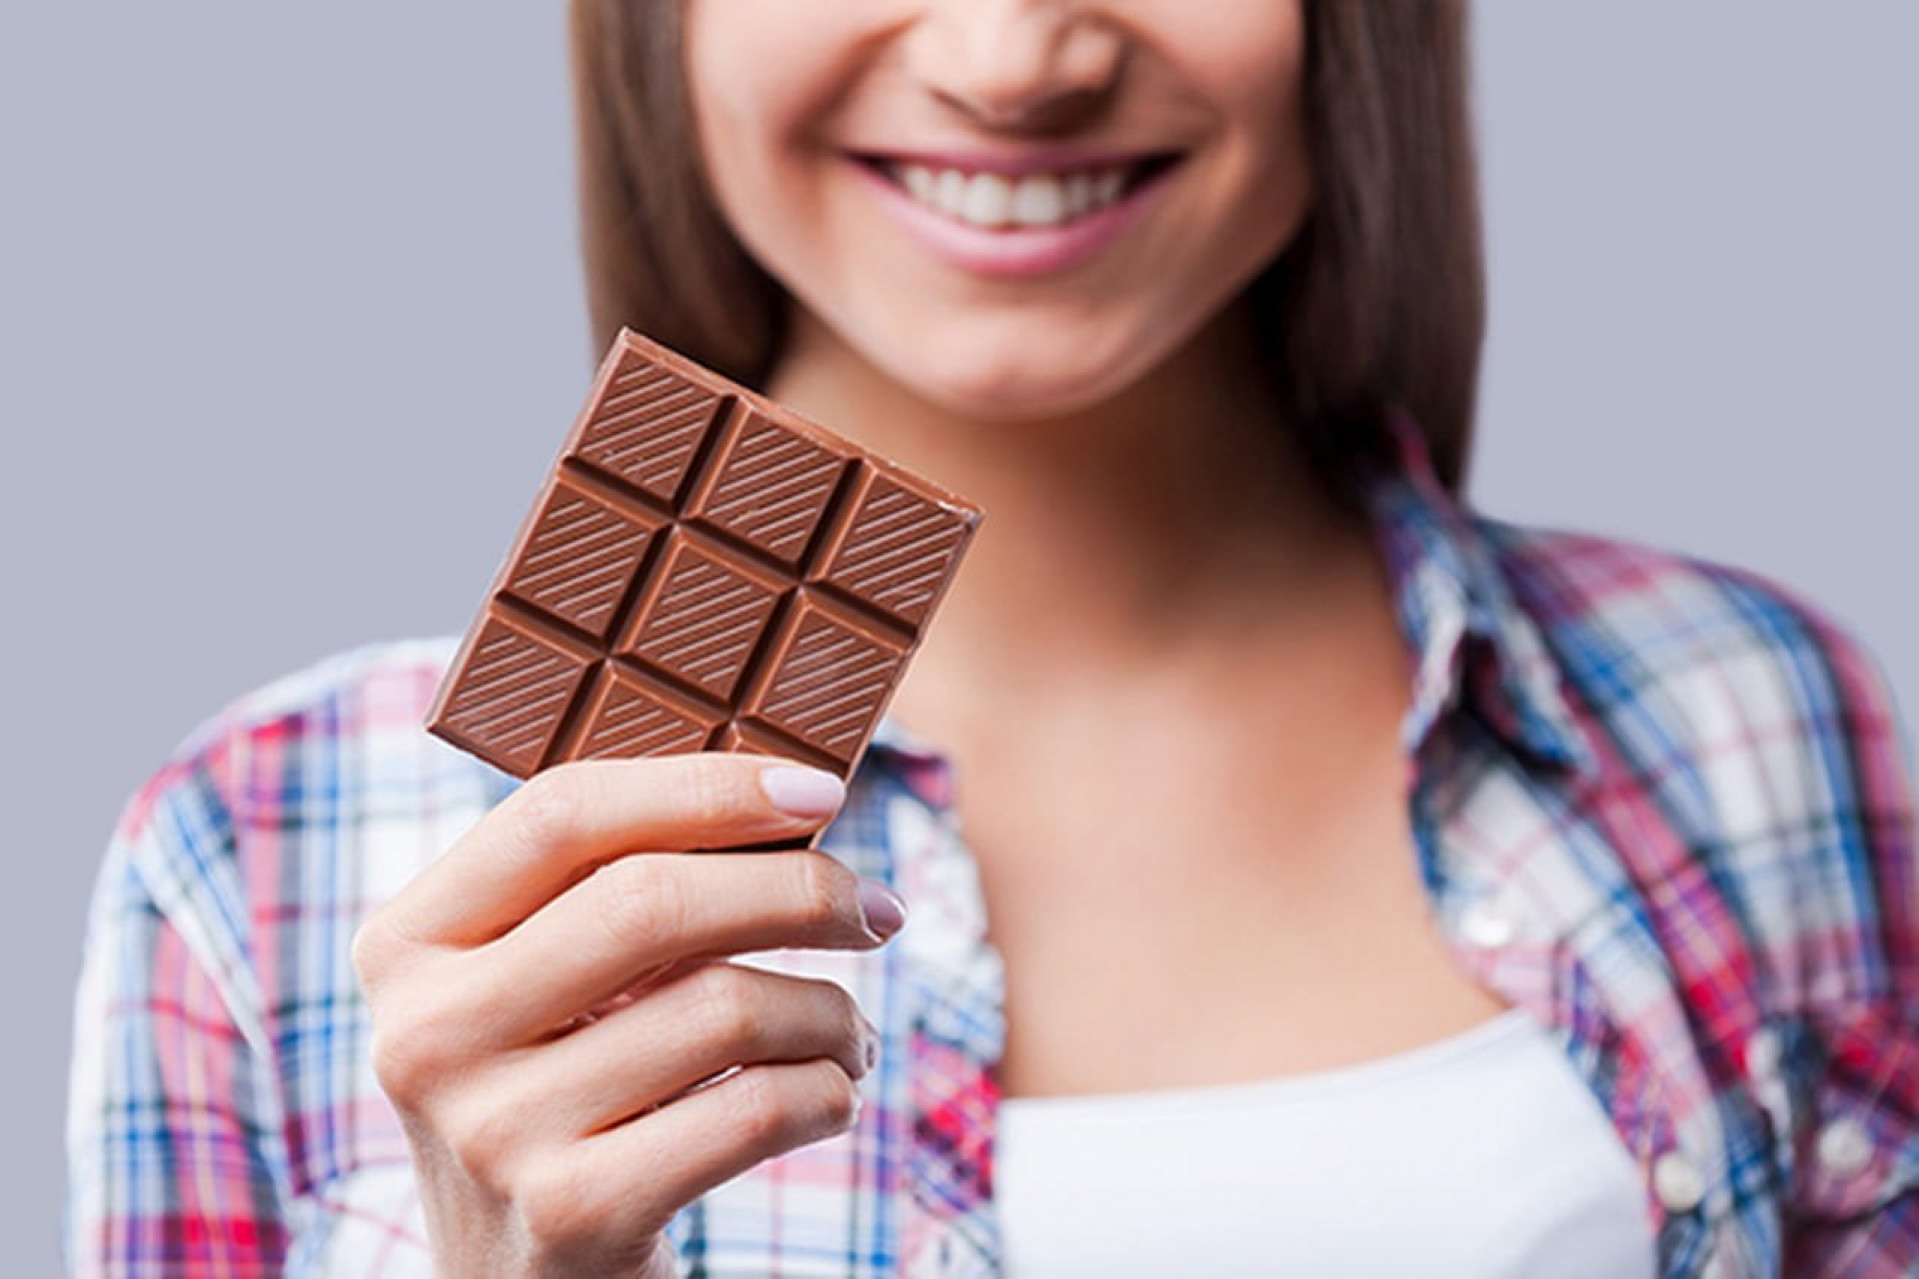 Обычную шоколадку. Необычный шоколад. Плитка шоколада в руке. Шоколадка в руке. Шоколадка в руке девушки.